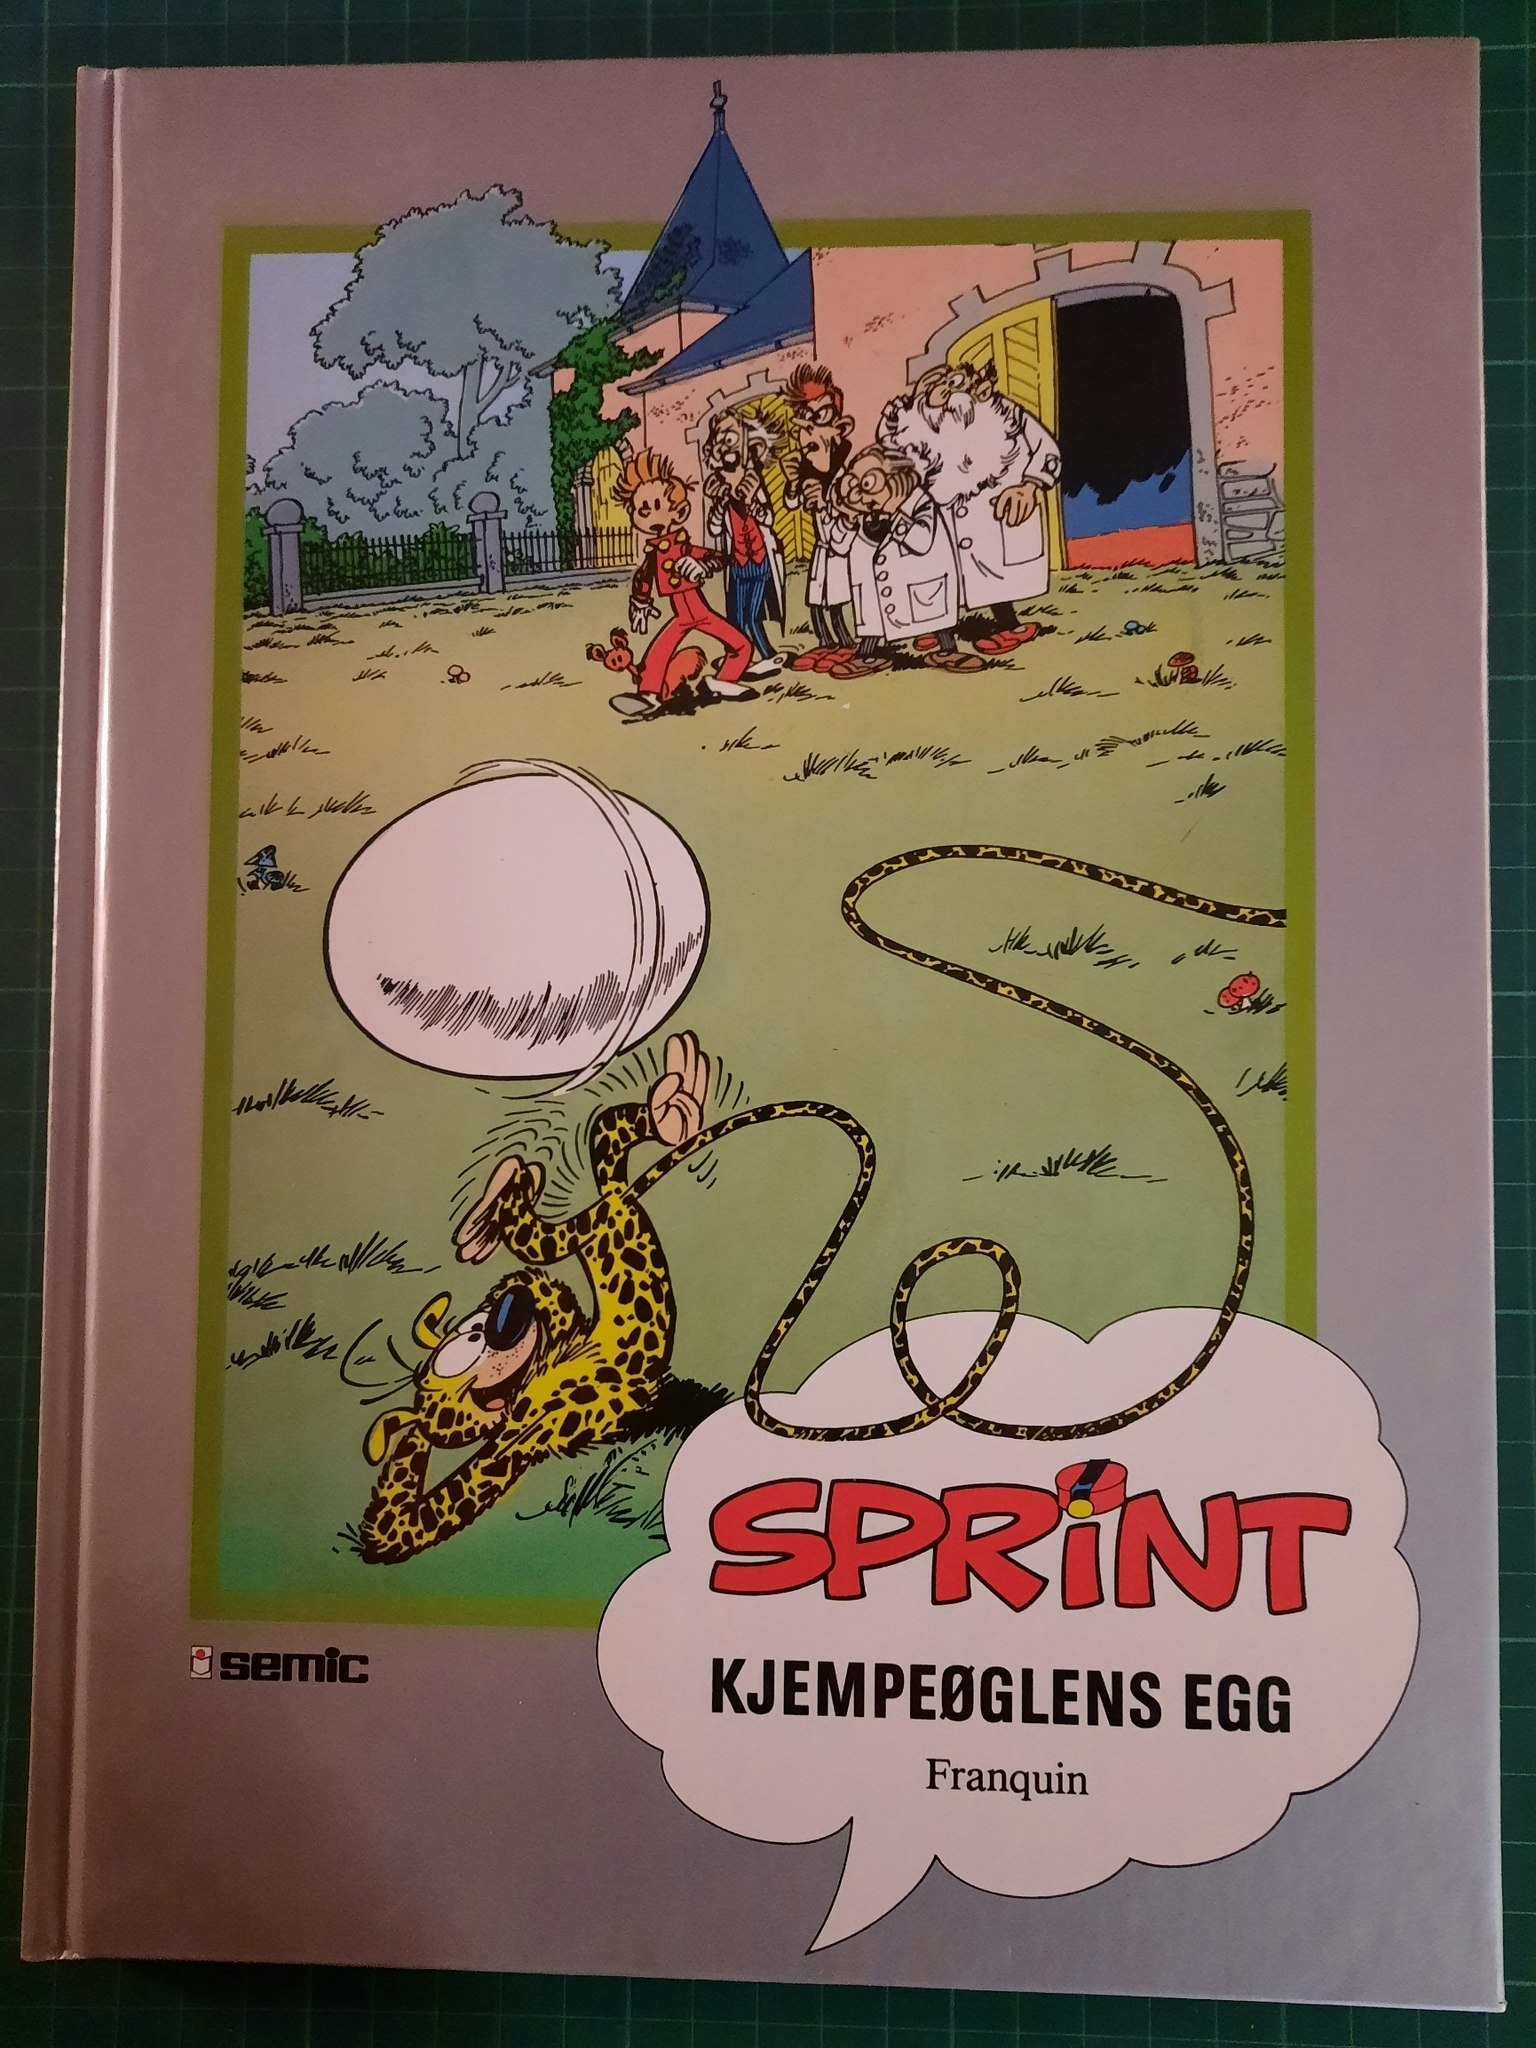 Sprint - Kjempeøglens egg